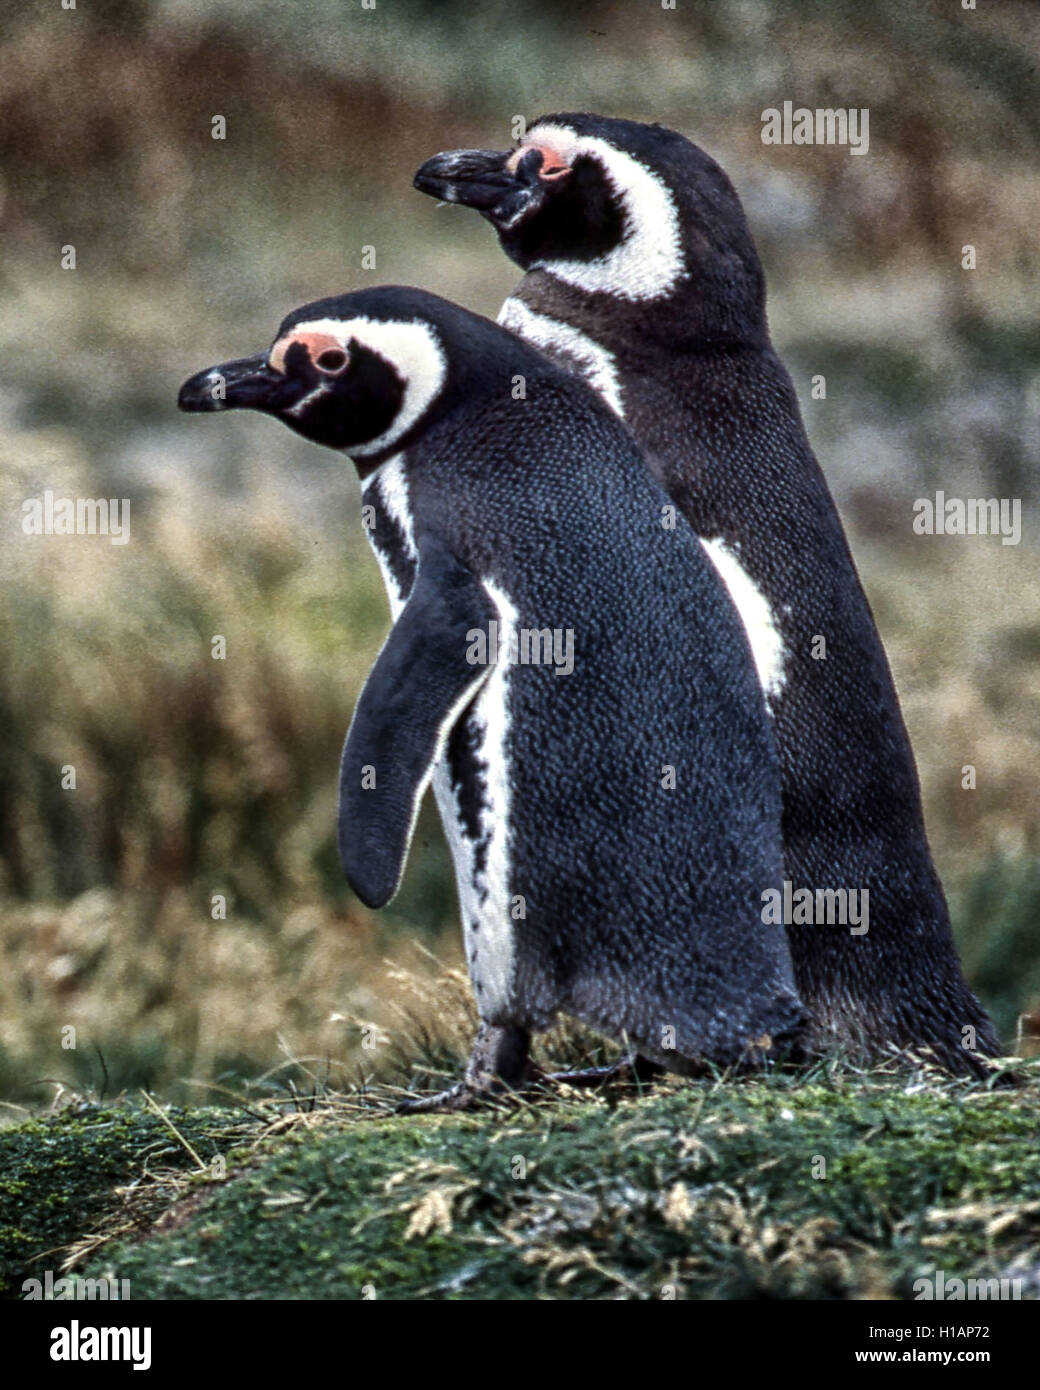 Región de Magallanes, Chile. 22 Feb, 2003. Una pareja de pingüinos de Magallanes (Spheniscus magellanicus) en la Reserva Pingüino Otway Sound en Chile, a 40 millas (65km) de la ciudad de Punta Arenas. Una popular atracción turística, los pingüinos volver allí cada año para la época de apareamiento. Fueron nombradas después de explorador portugués Fernando de Magallanes, quien descubrió a los pájaros en 1520. © Arnold Drapkin/Zuma alambre/Alamy Live News Foto de stock